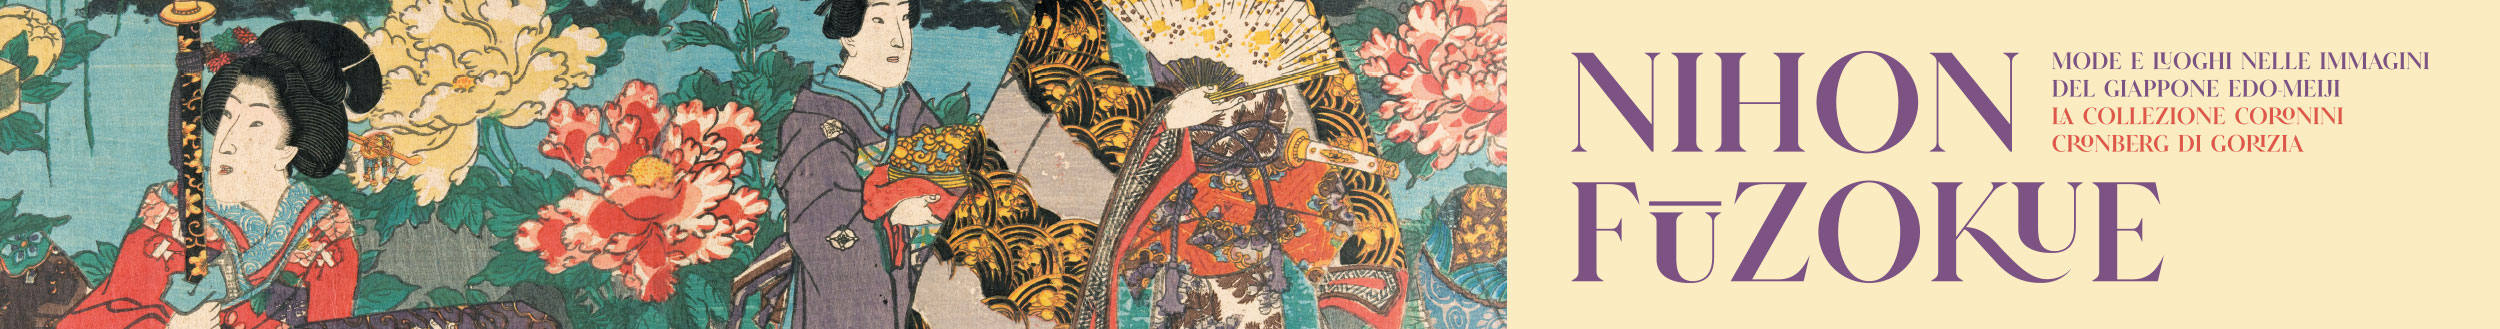 NIHON FŪZOKUE. Mode e luoghi nelle immagini del Giappone Edo-Meiji